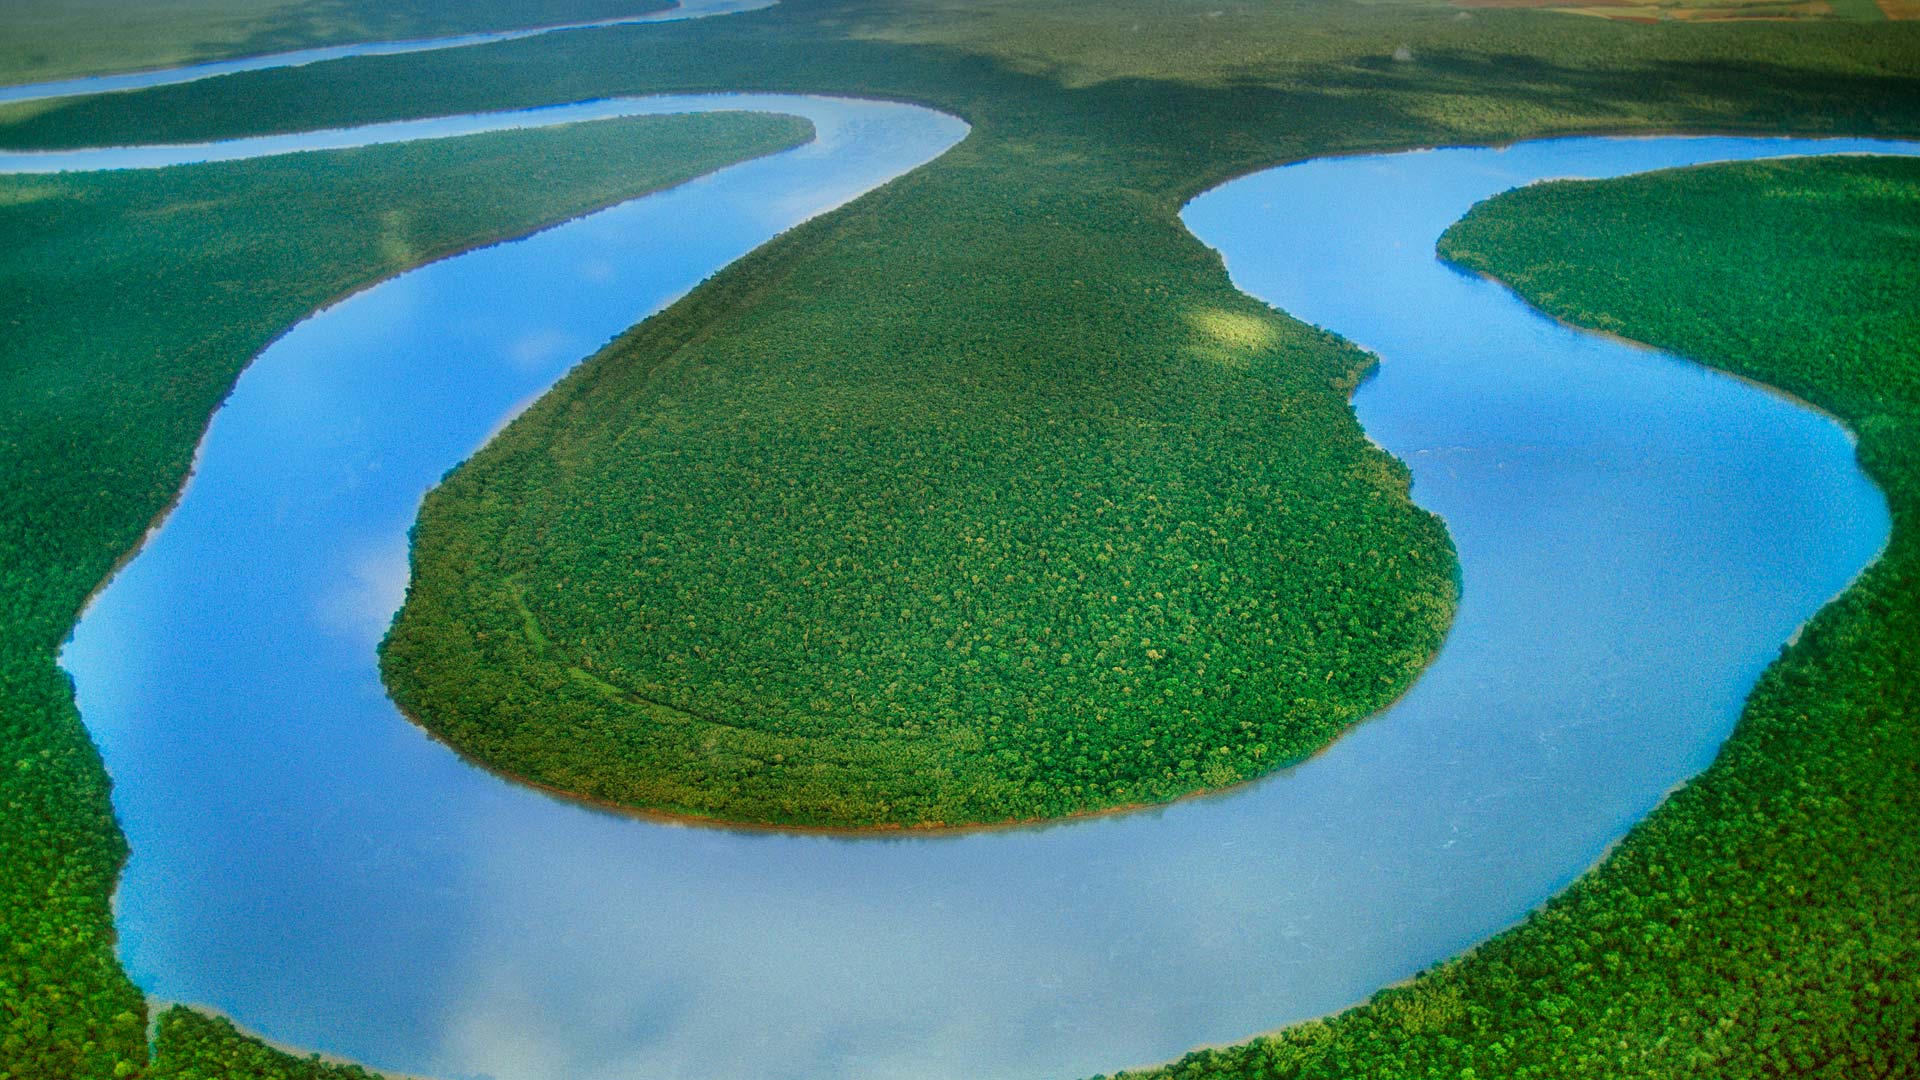 Iguazu River